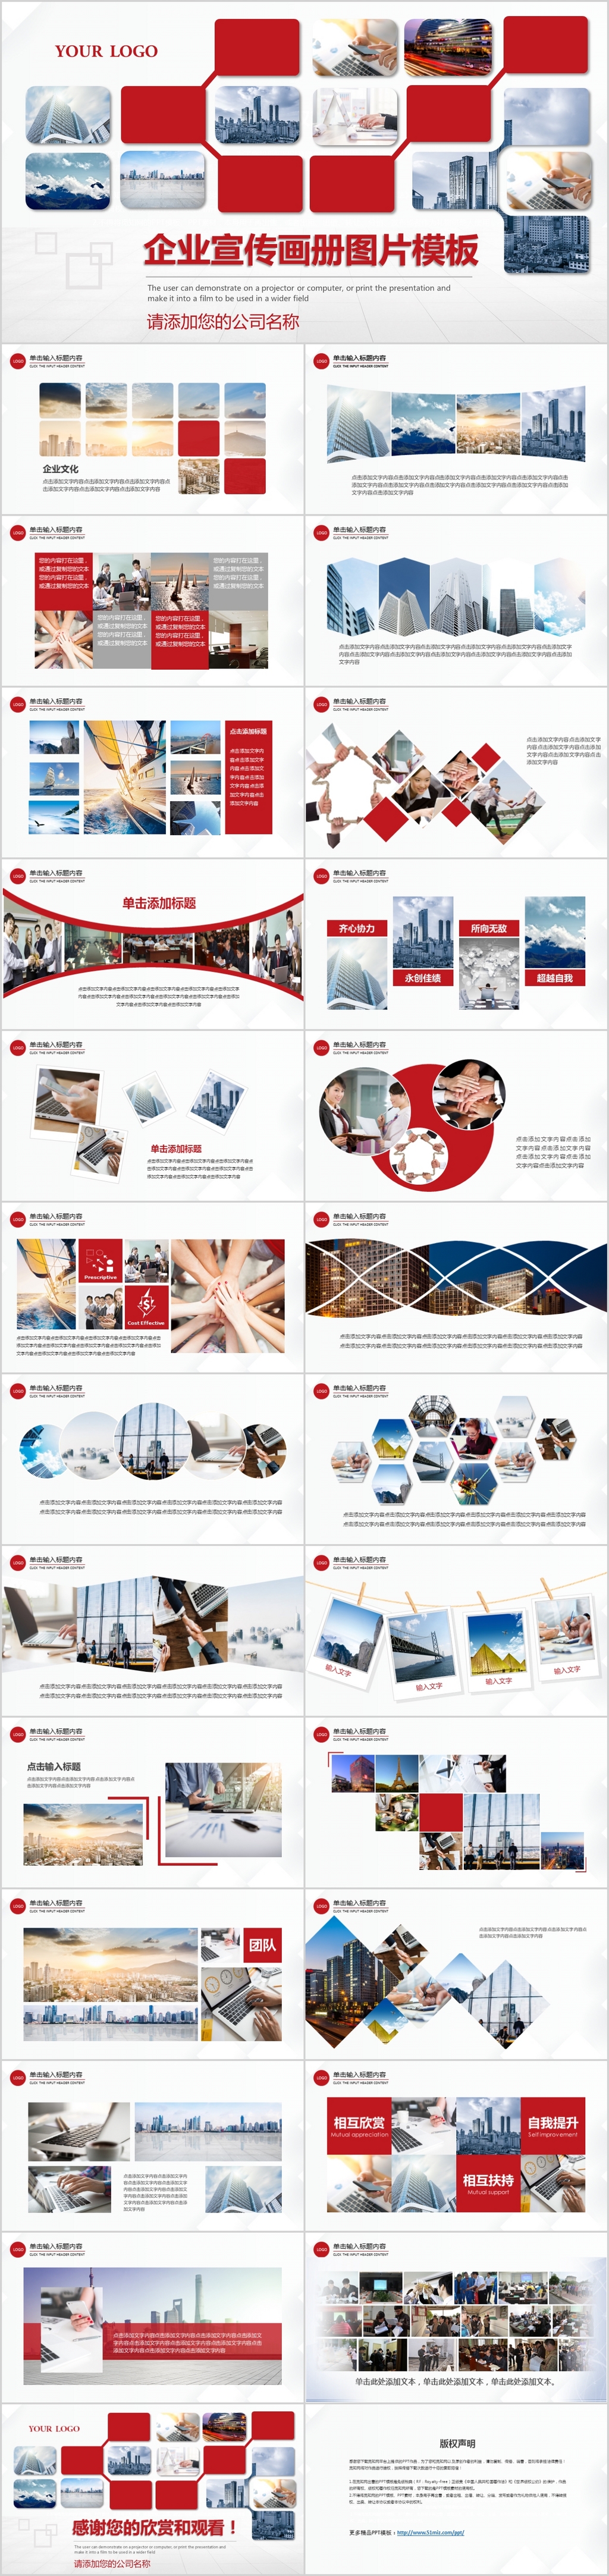 红色大气公司宣传企业画册企业公司介绍ppt企业文化keynote模板